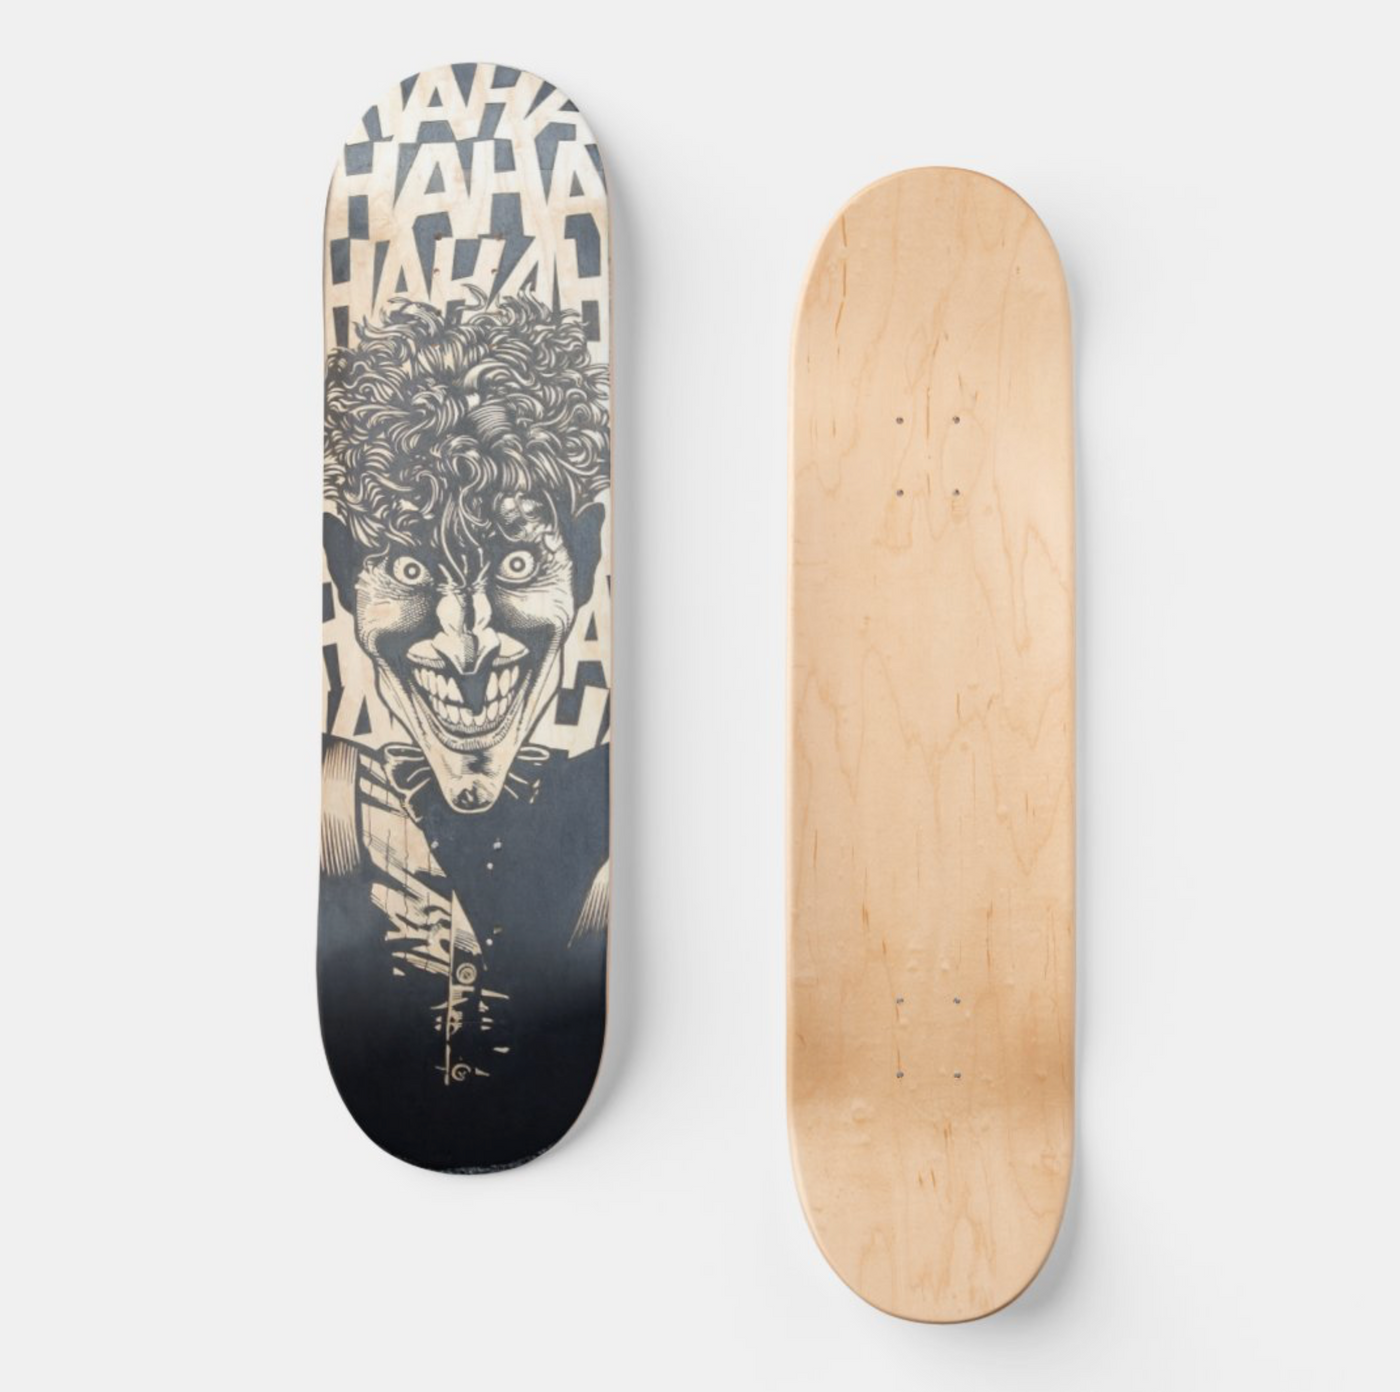 "The Joker" Skateboard